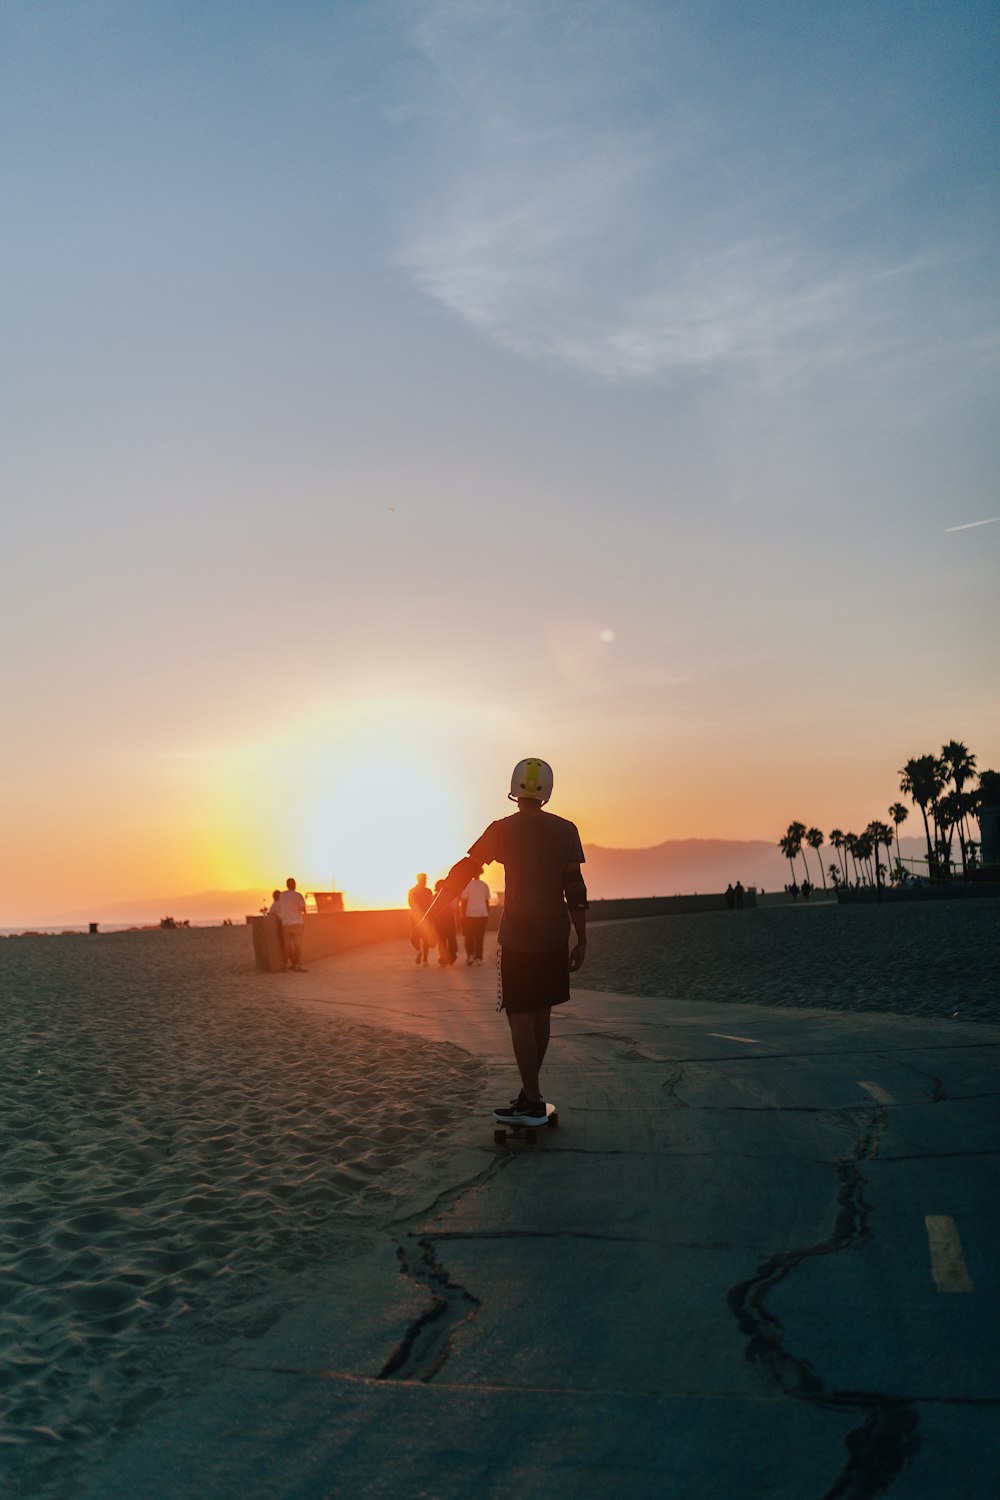 a man skateboards on a beach